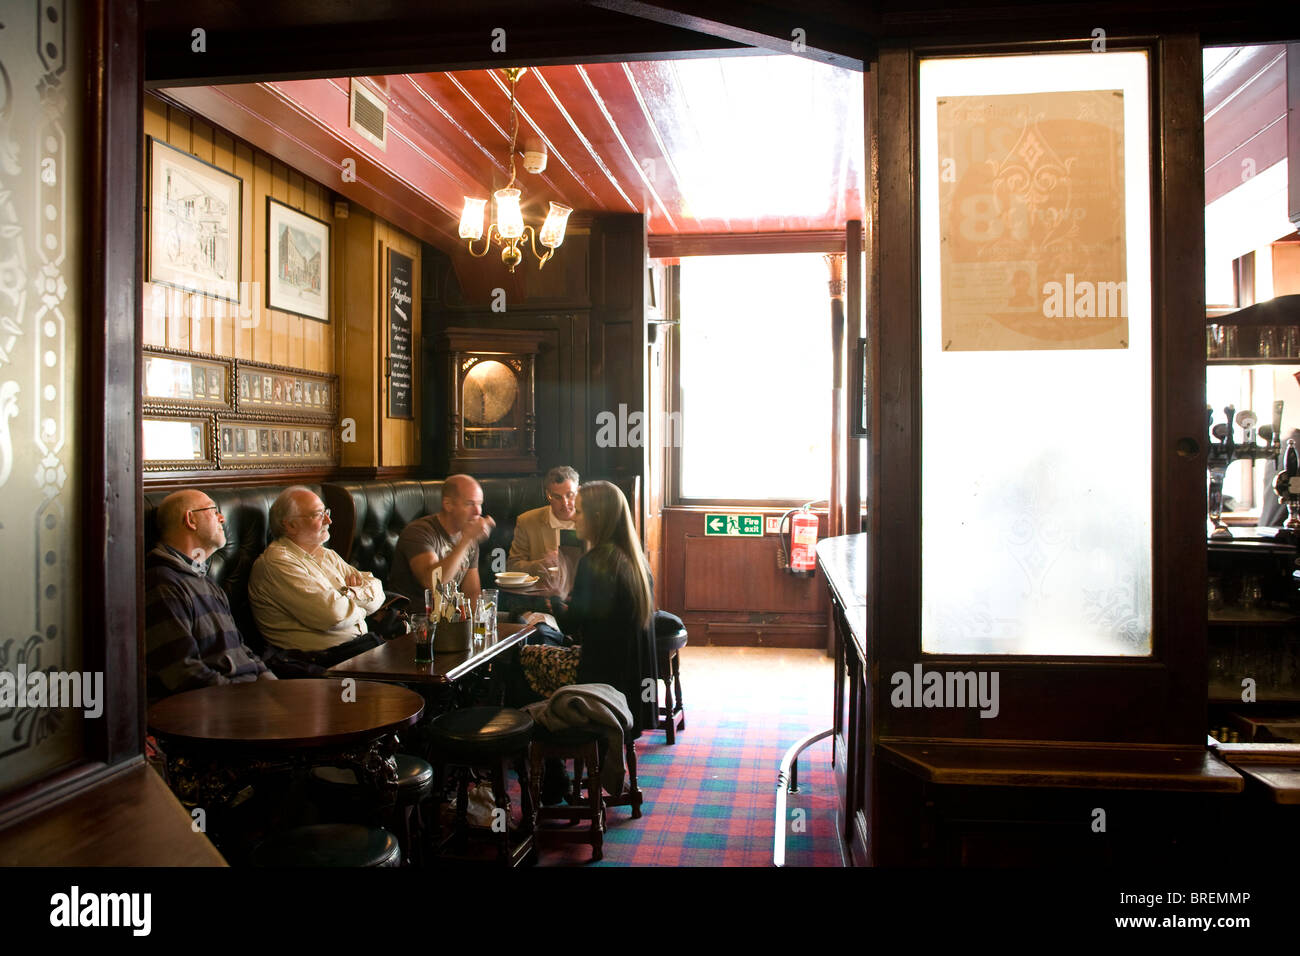 El cordero de un pub tradicional en el centro de Londres dirigidos por jóvenes de Gran Bretaña conocida cervecería real ale Foto de stock